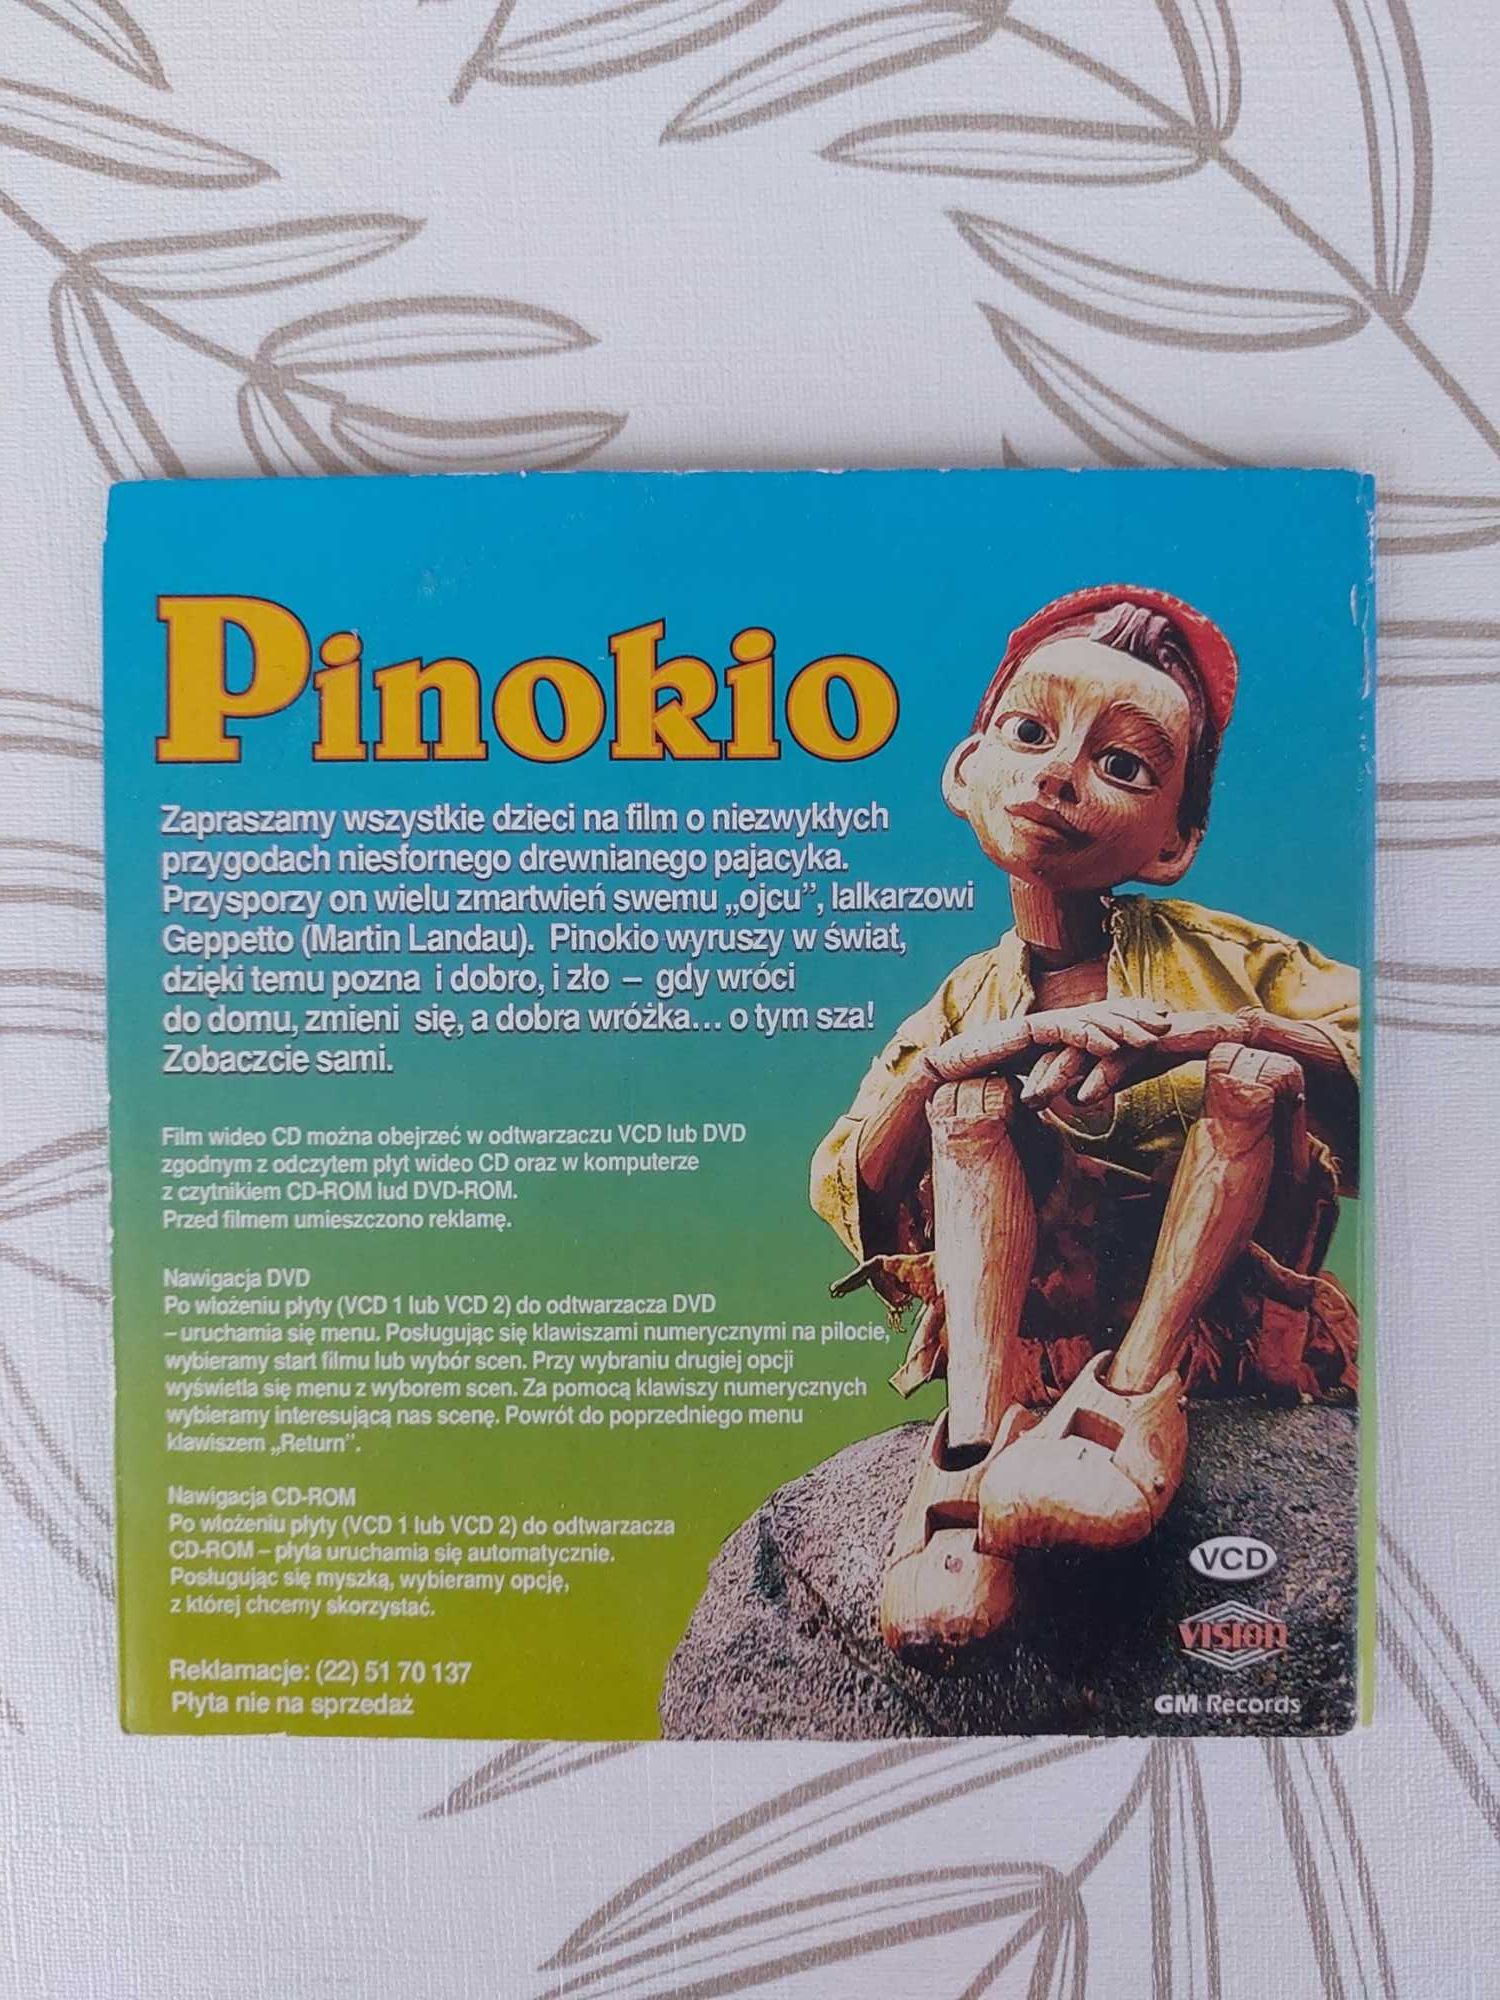 Pinokio - film w polskiej wersji językowej